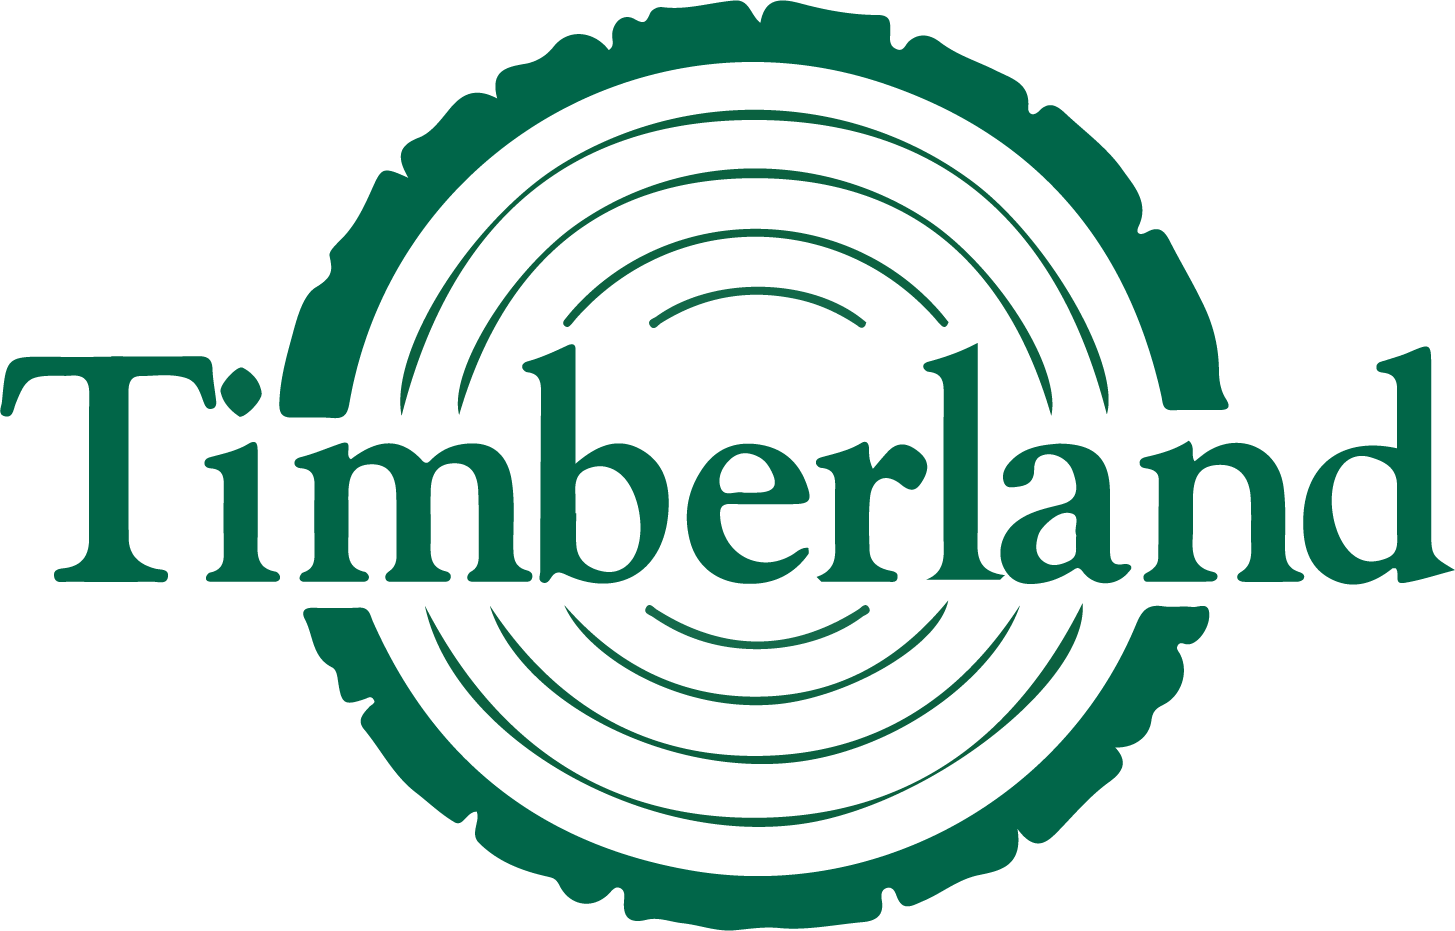 Timberland Bancorp logo (transparent PNG)